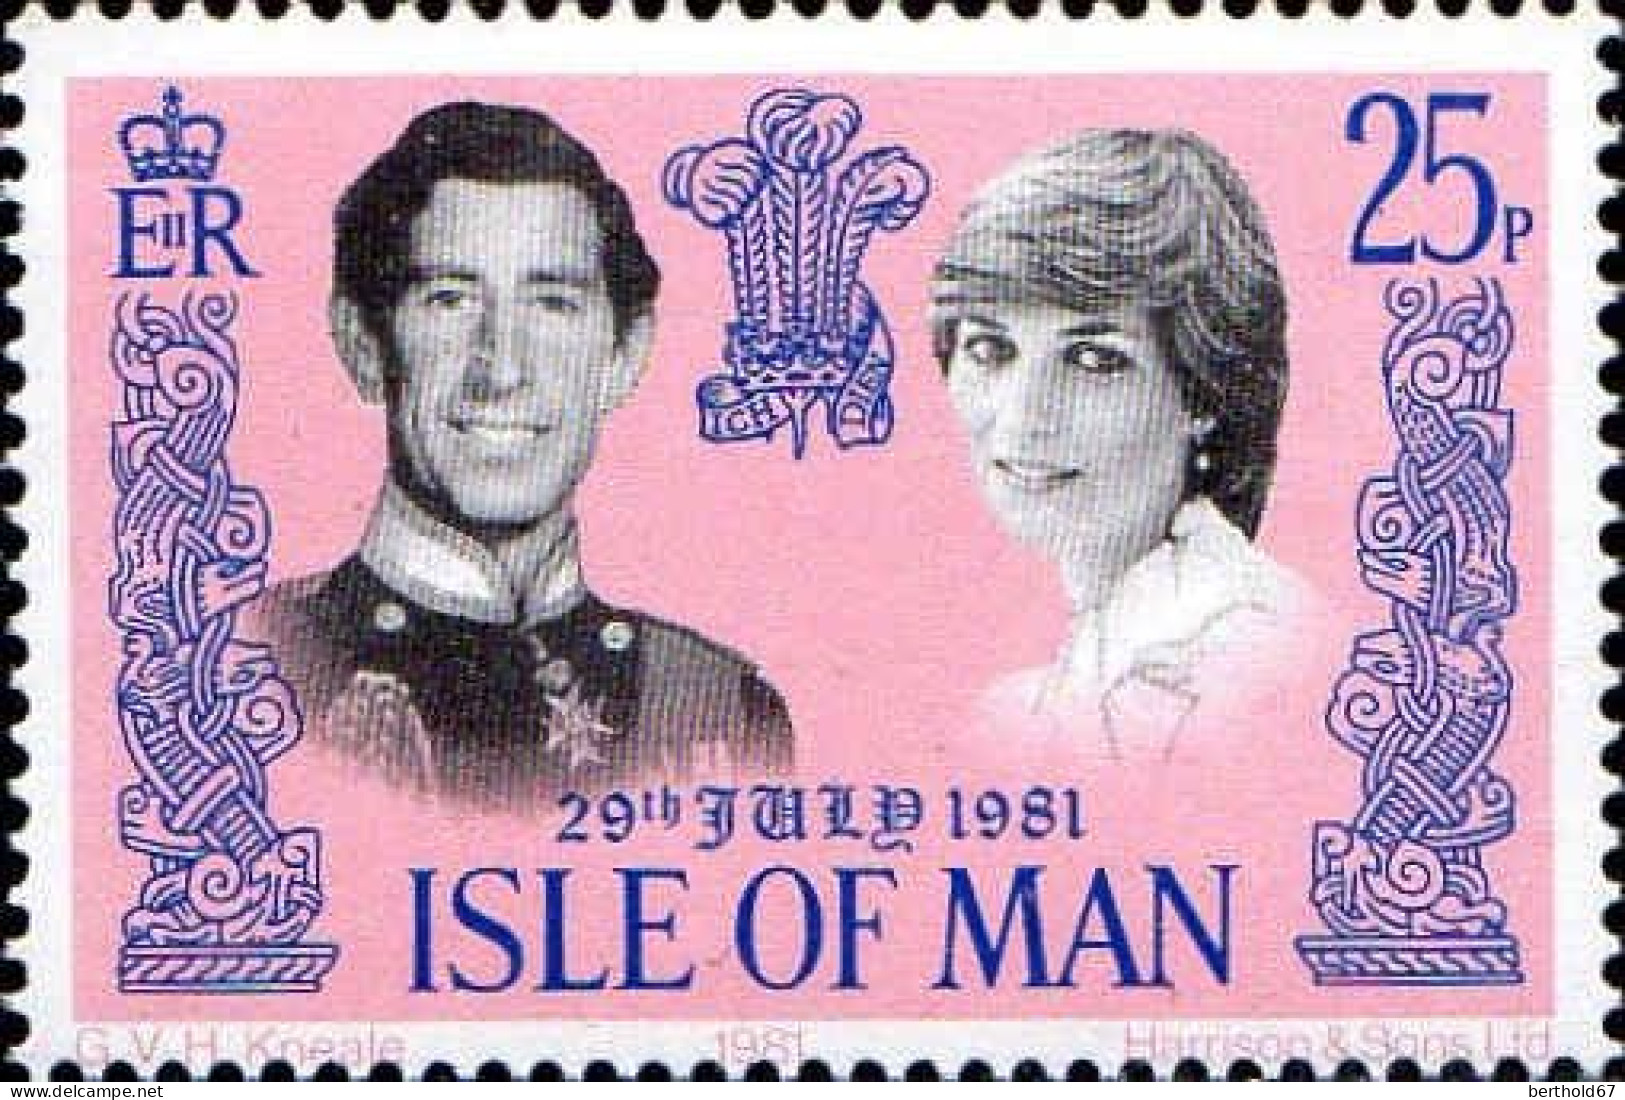 Man Poste N** Yv:189/190 Mariage Du Prince Charles & De Lady Diana - Man (Eiland)